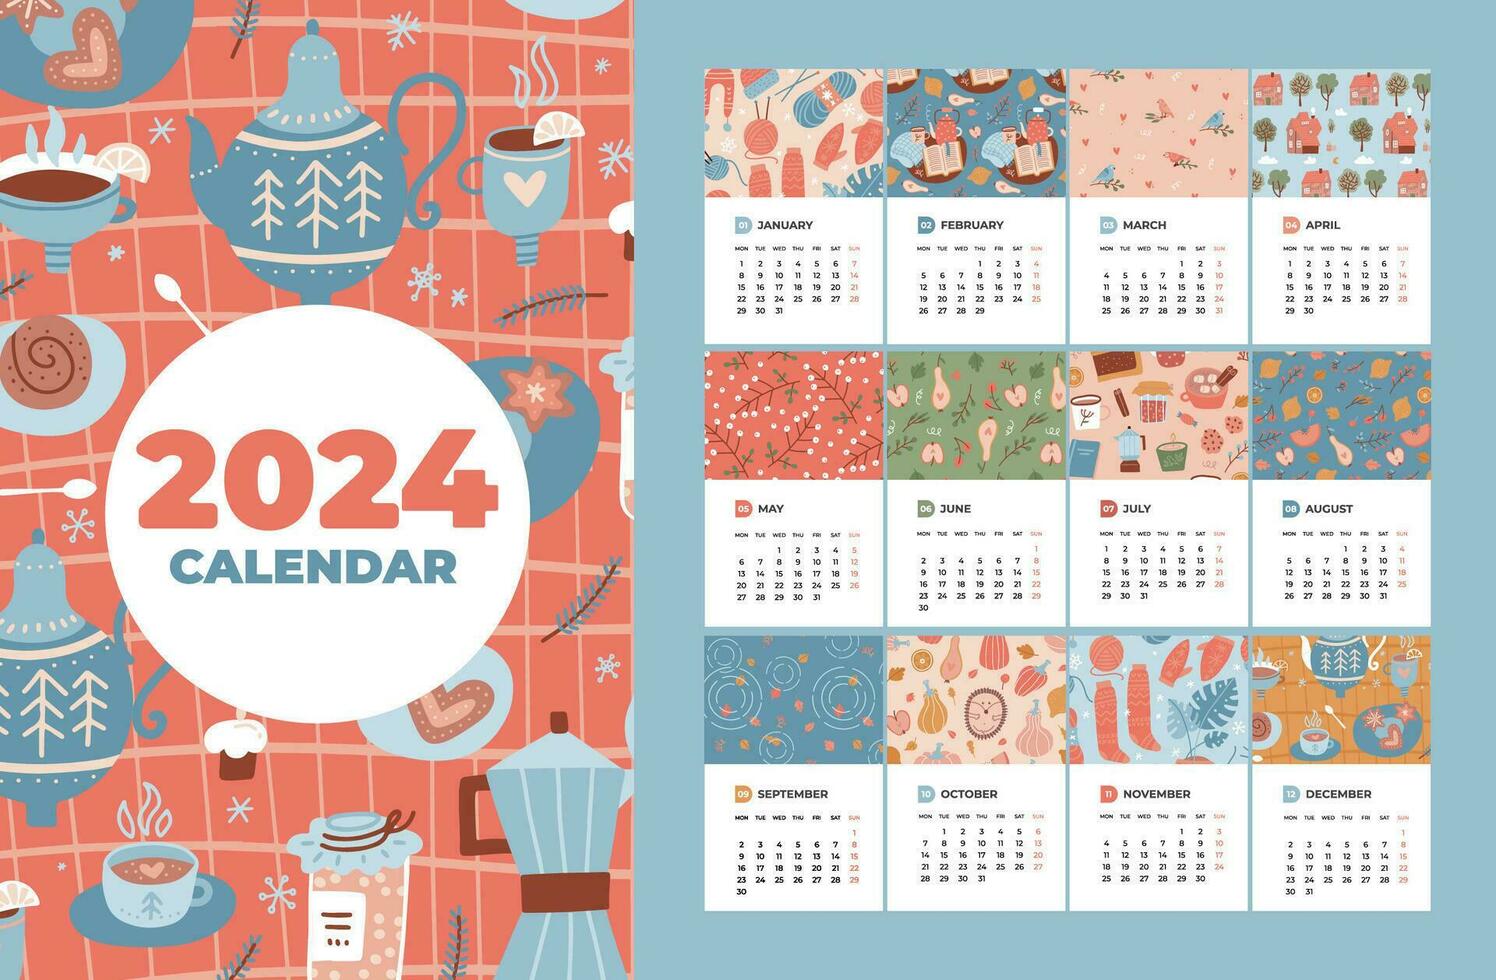 2024 kalender mall uppsättning med 12 månader sidor och omslag. bitar av papper med färgrik mysigt säsonger element mönster i platt stil. vecka börjar på måndag. vektor hand dragen illustration.